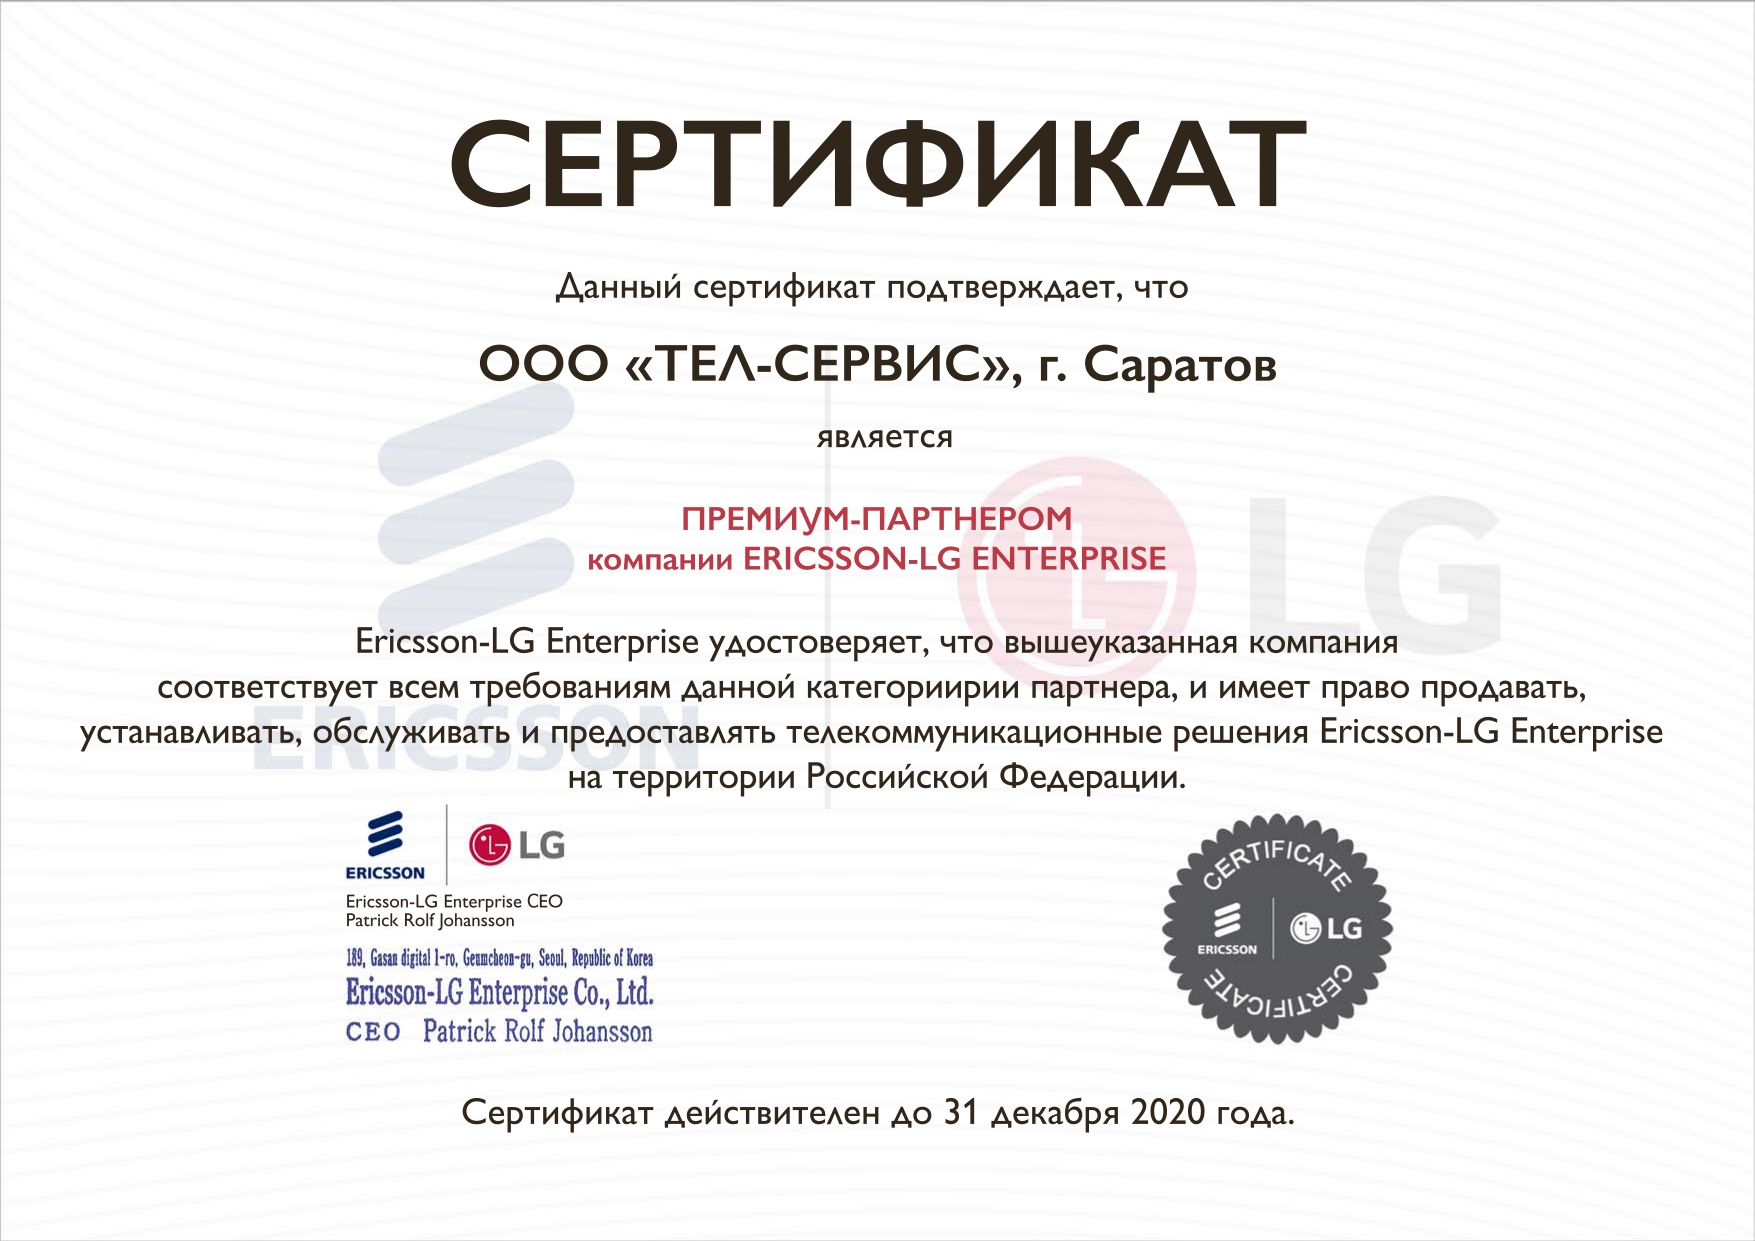 Сертификат Премиум-партнера от LG до 2020